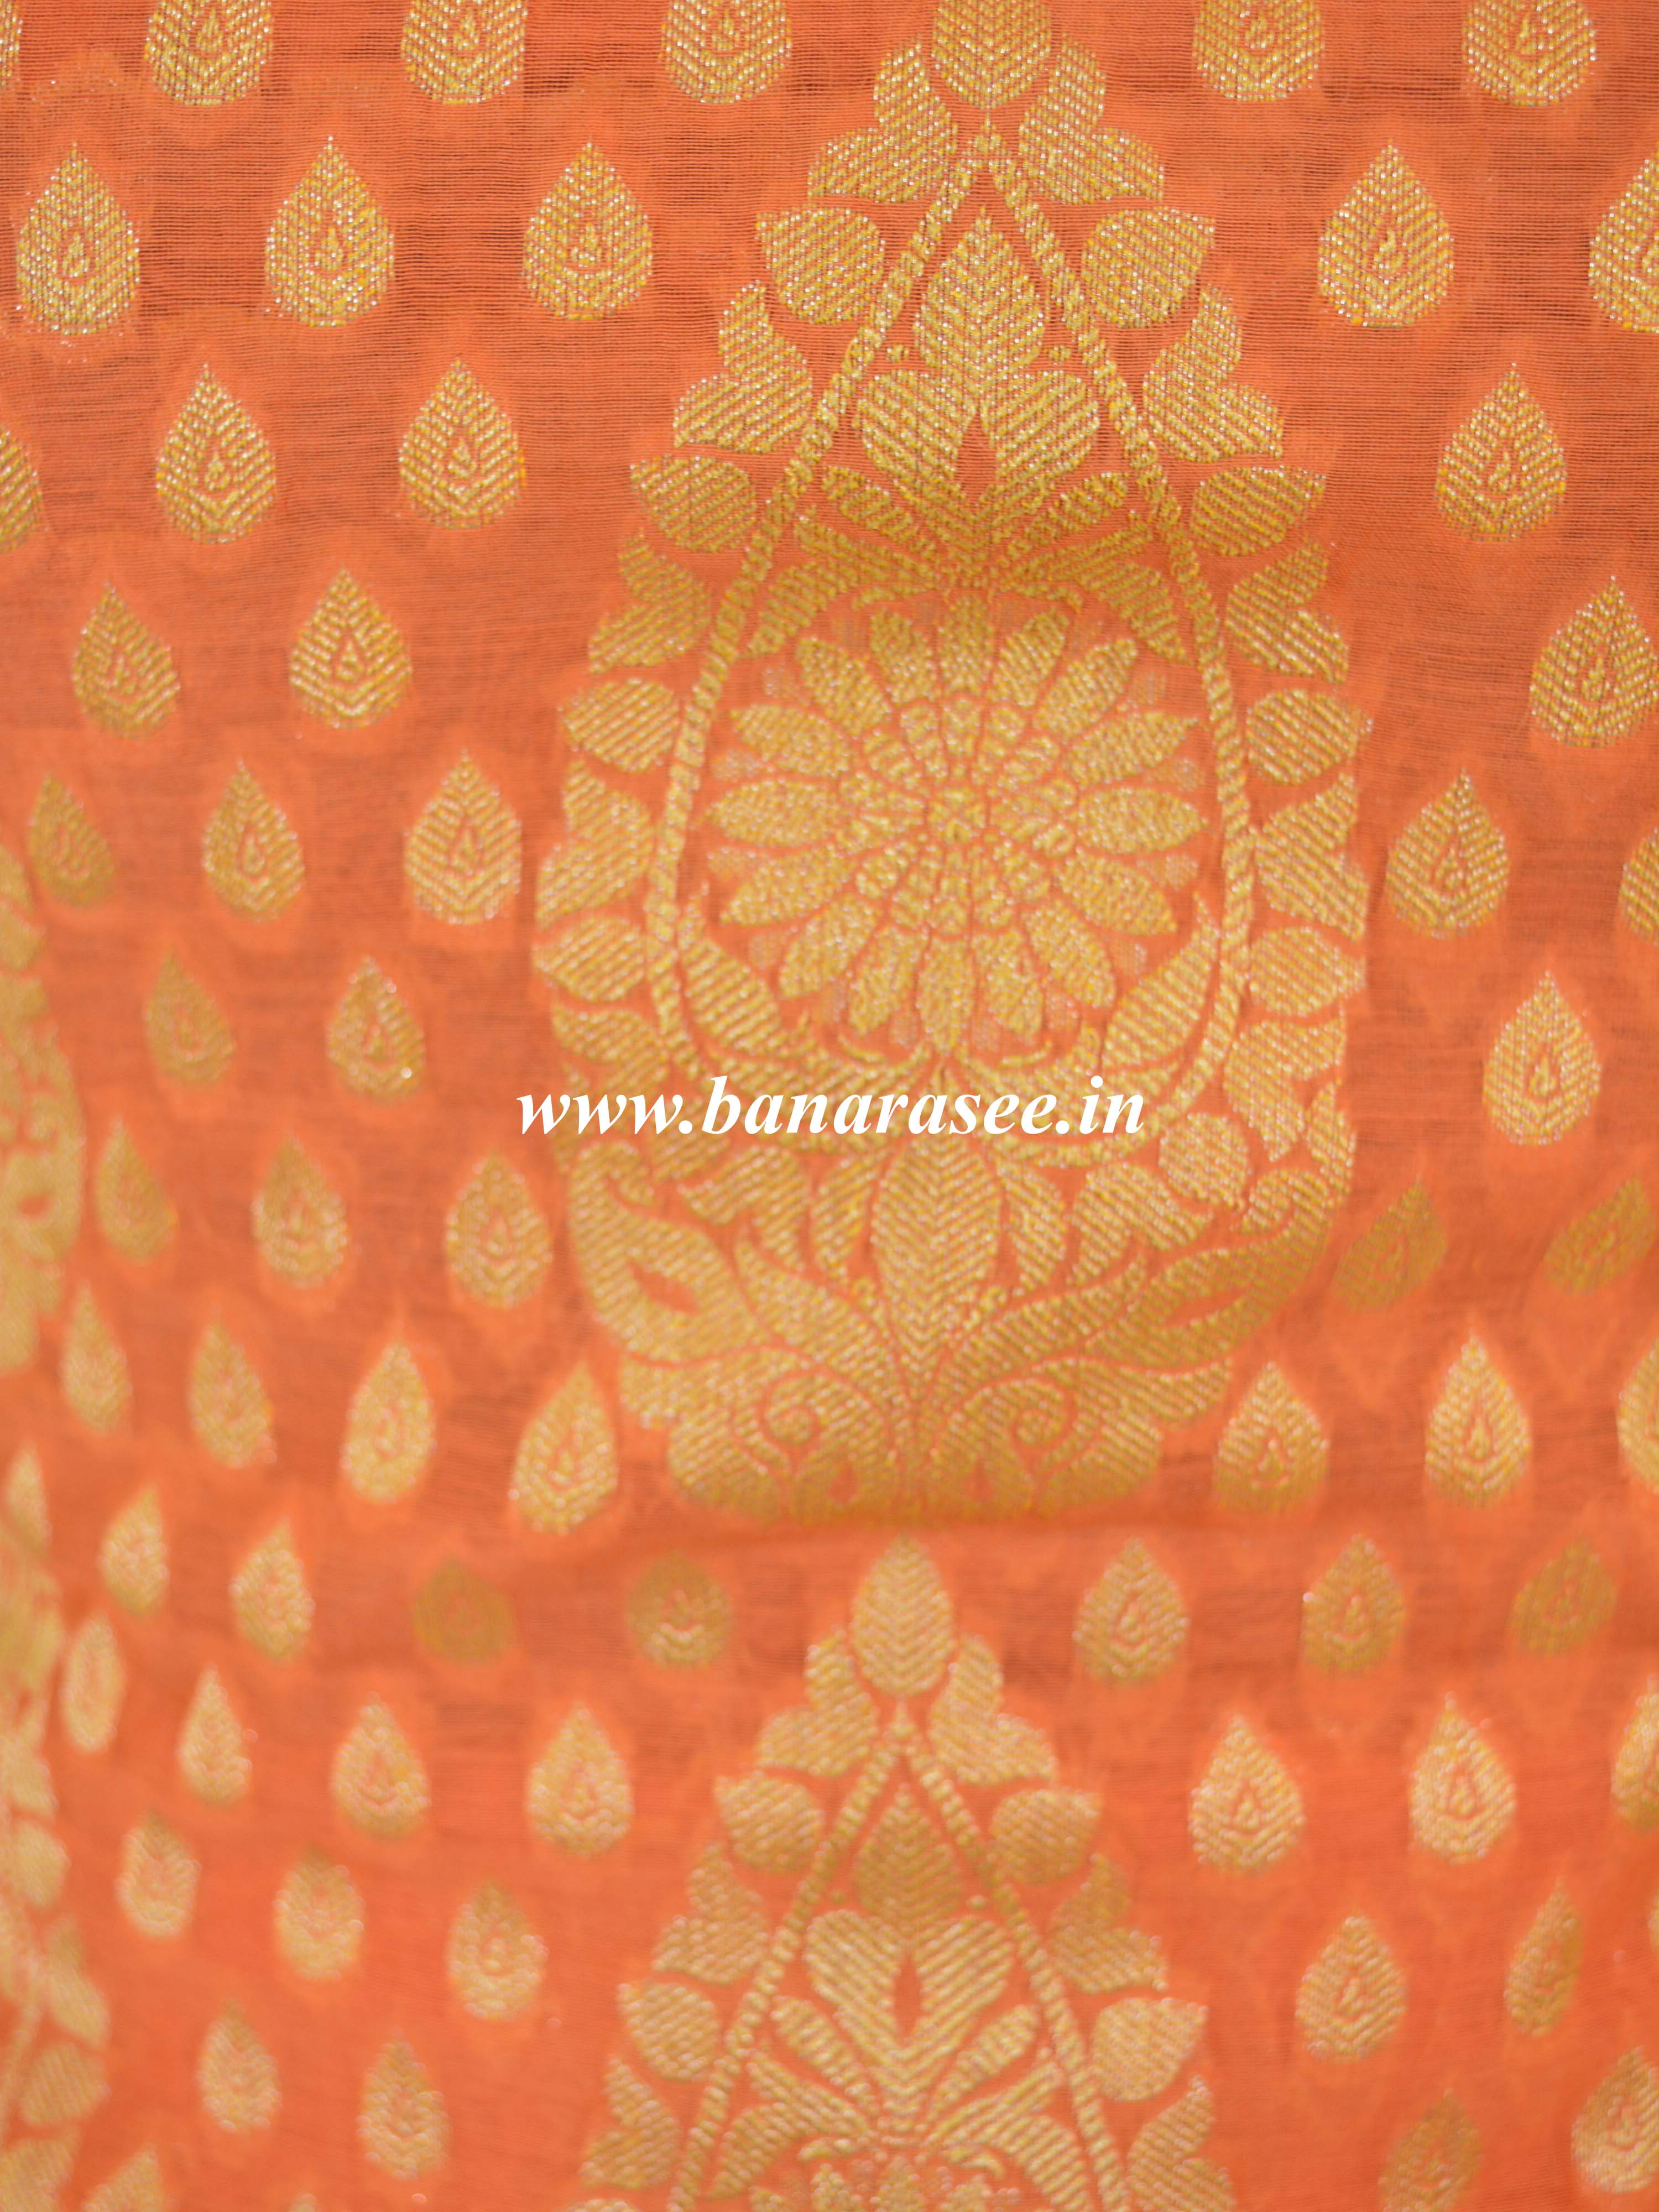 Banarasee Salwar Kameez Cotton Silk Gold Zari Buti Woven Fabric-Coral